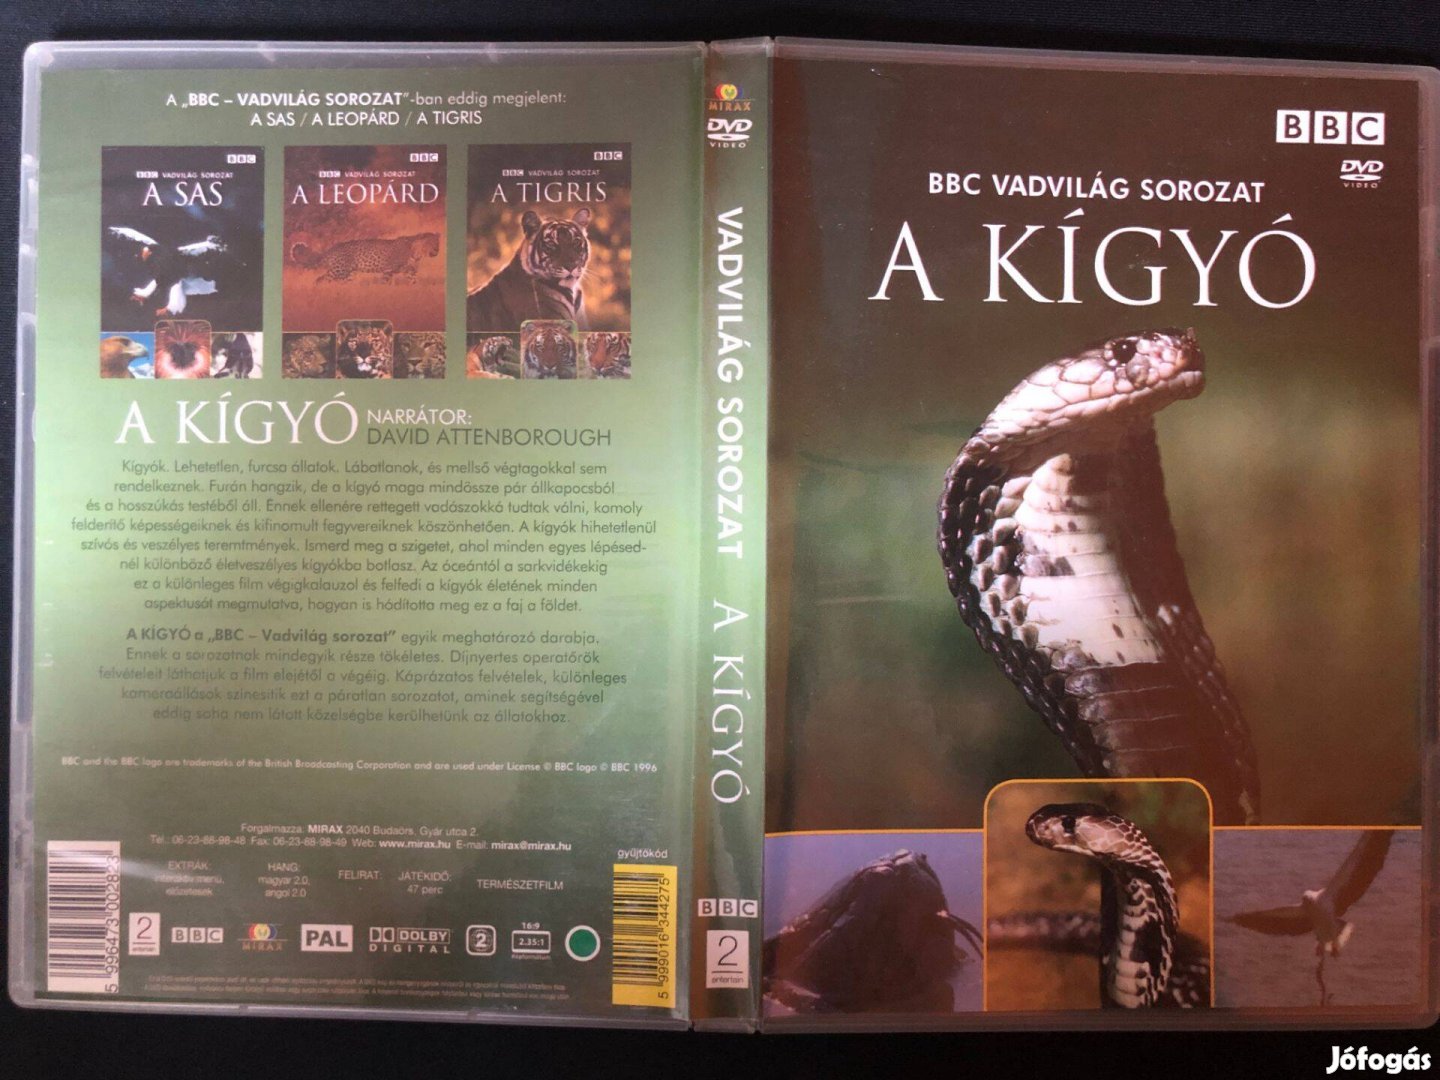 Vadvilág sorozat BBC A kígyó DVD (karcmentes)